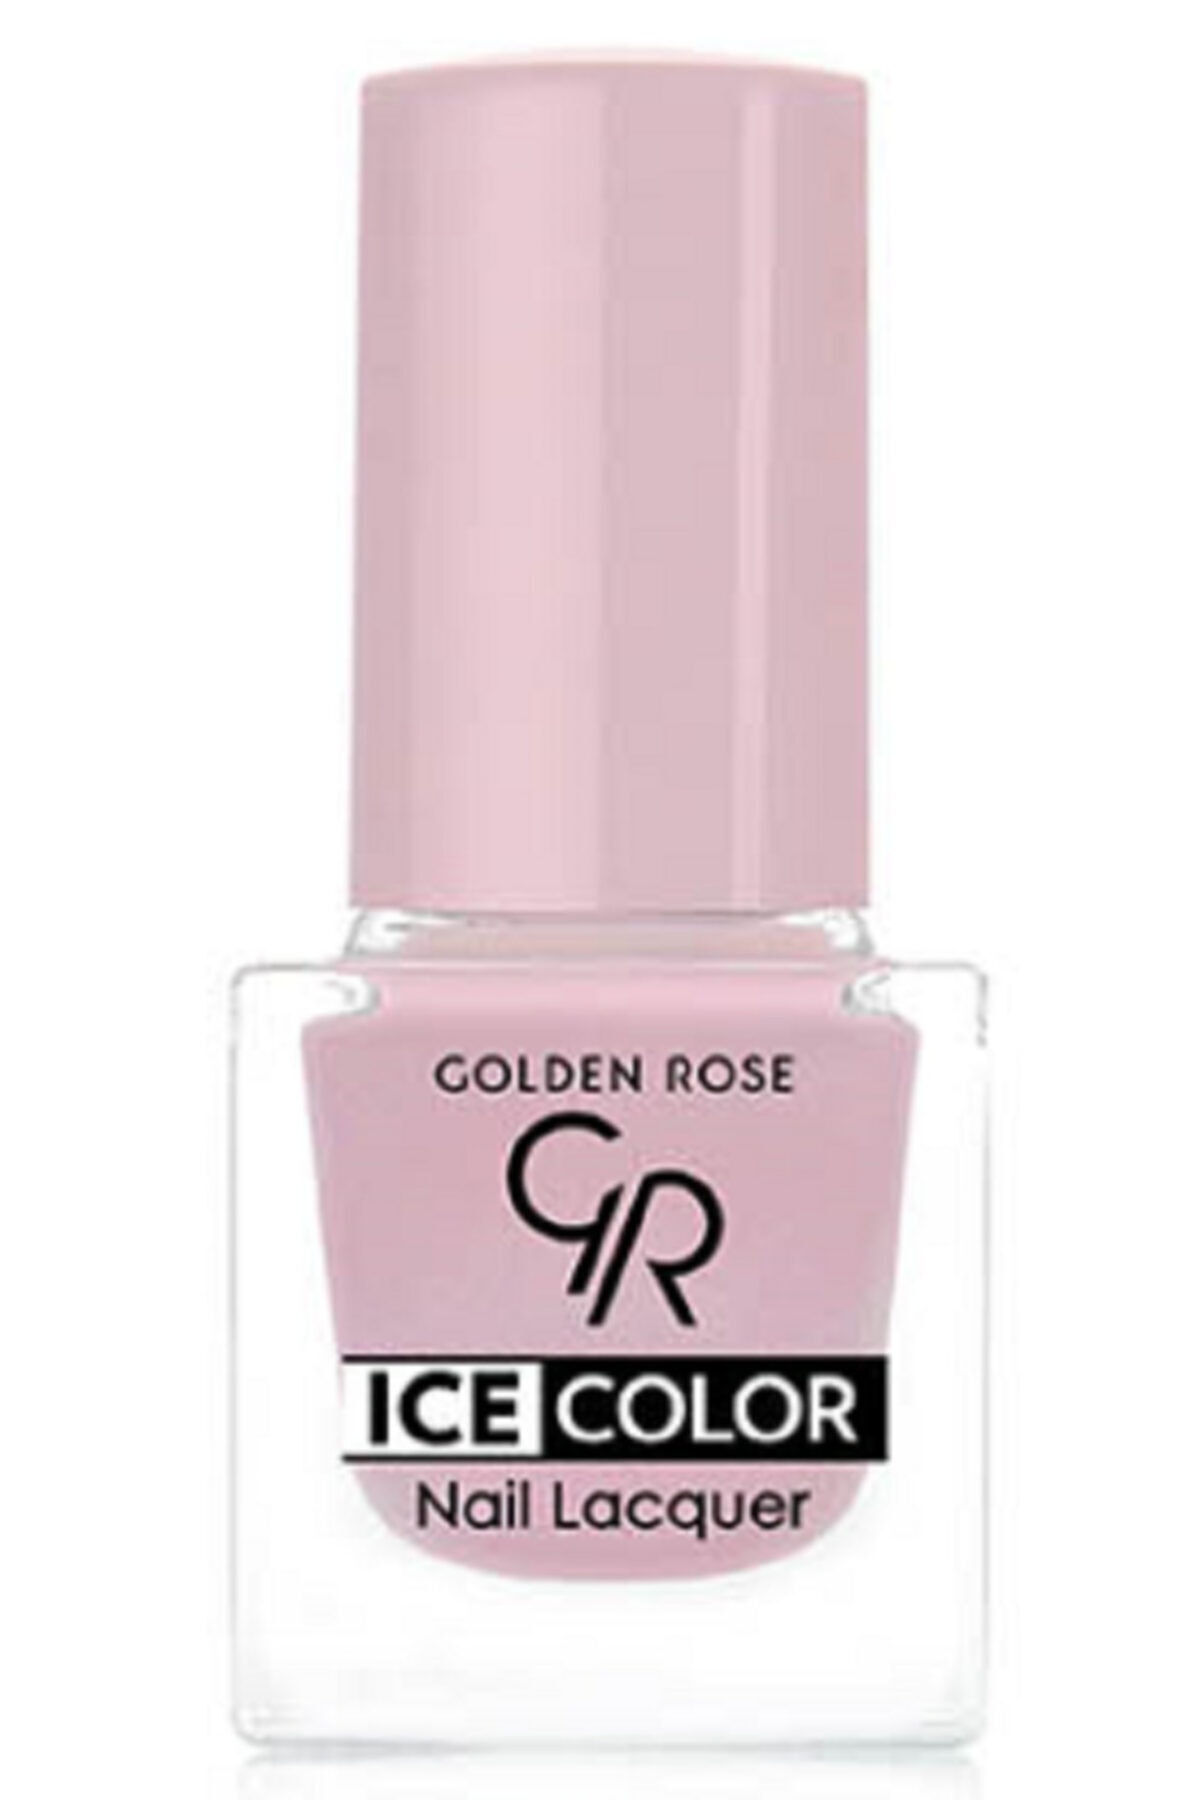 لاک ناخن یخی آیس چیک ICE شماره 147 رنگ خاکستری گلدن رز Golden Rose